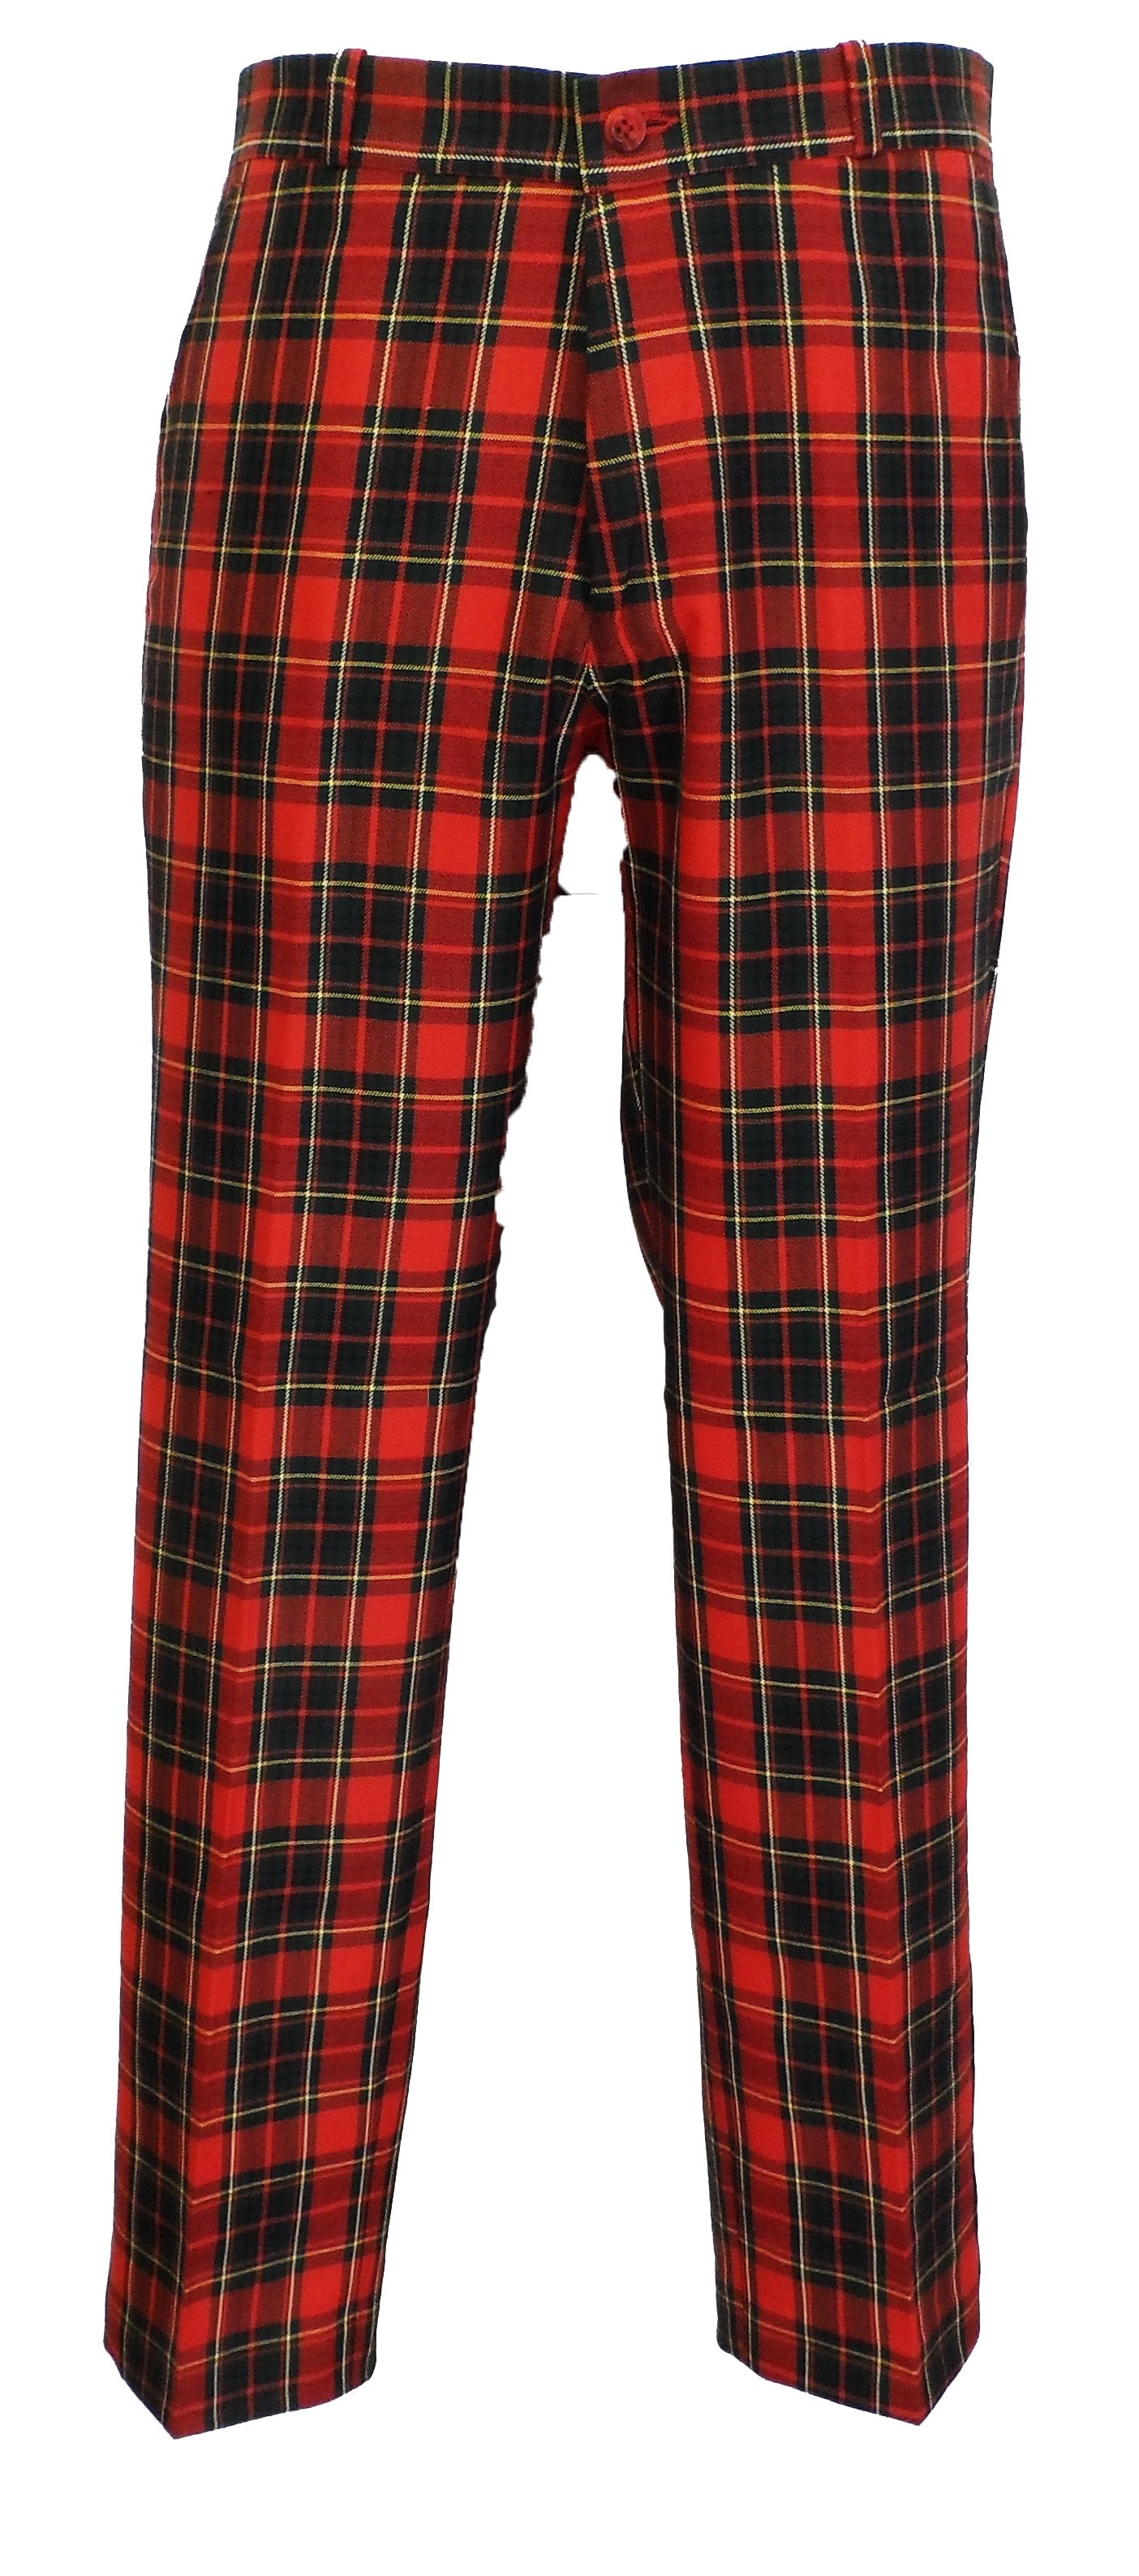 Sta Press Trousers vintage mod retrò anni '60 e '70 in tartan rosso